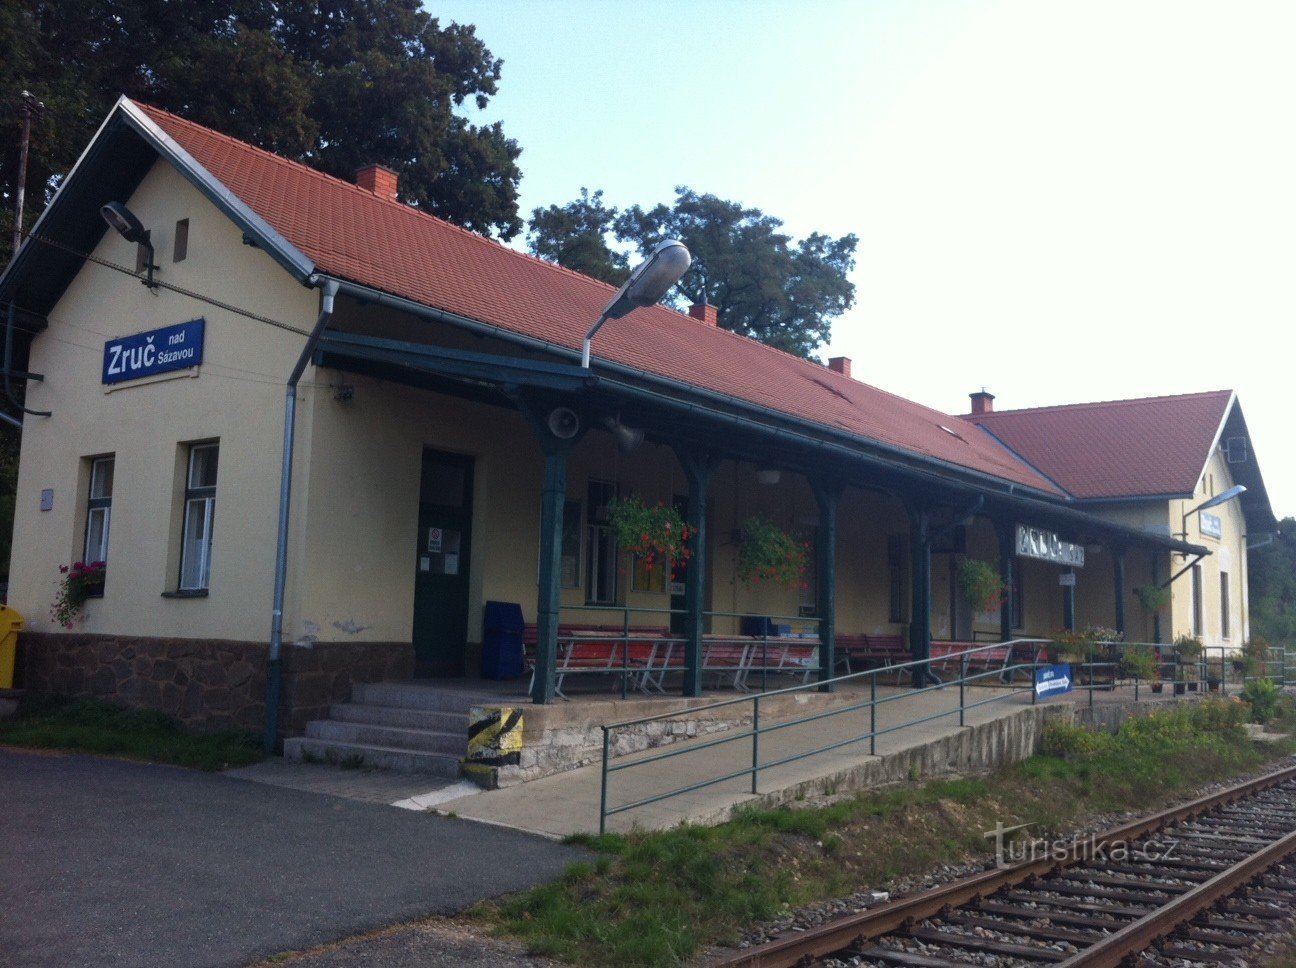 Stazione ferroviaria di Zruč nad Sázavou